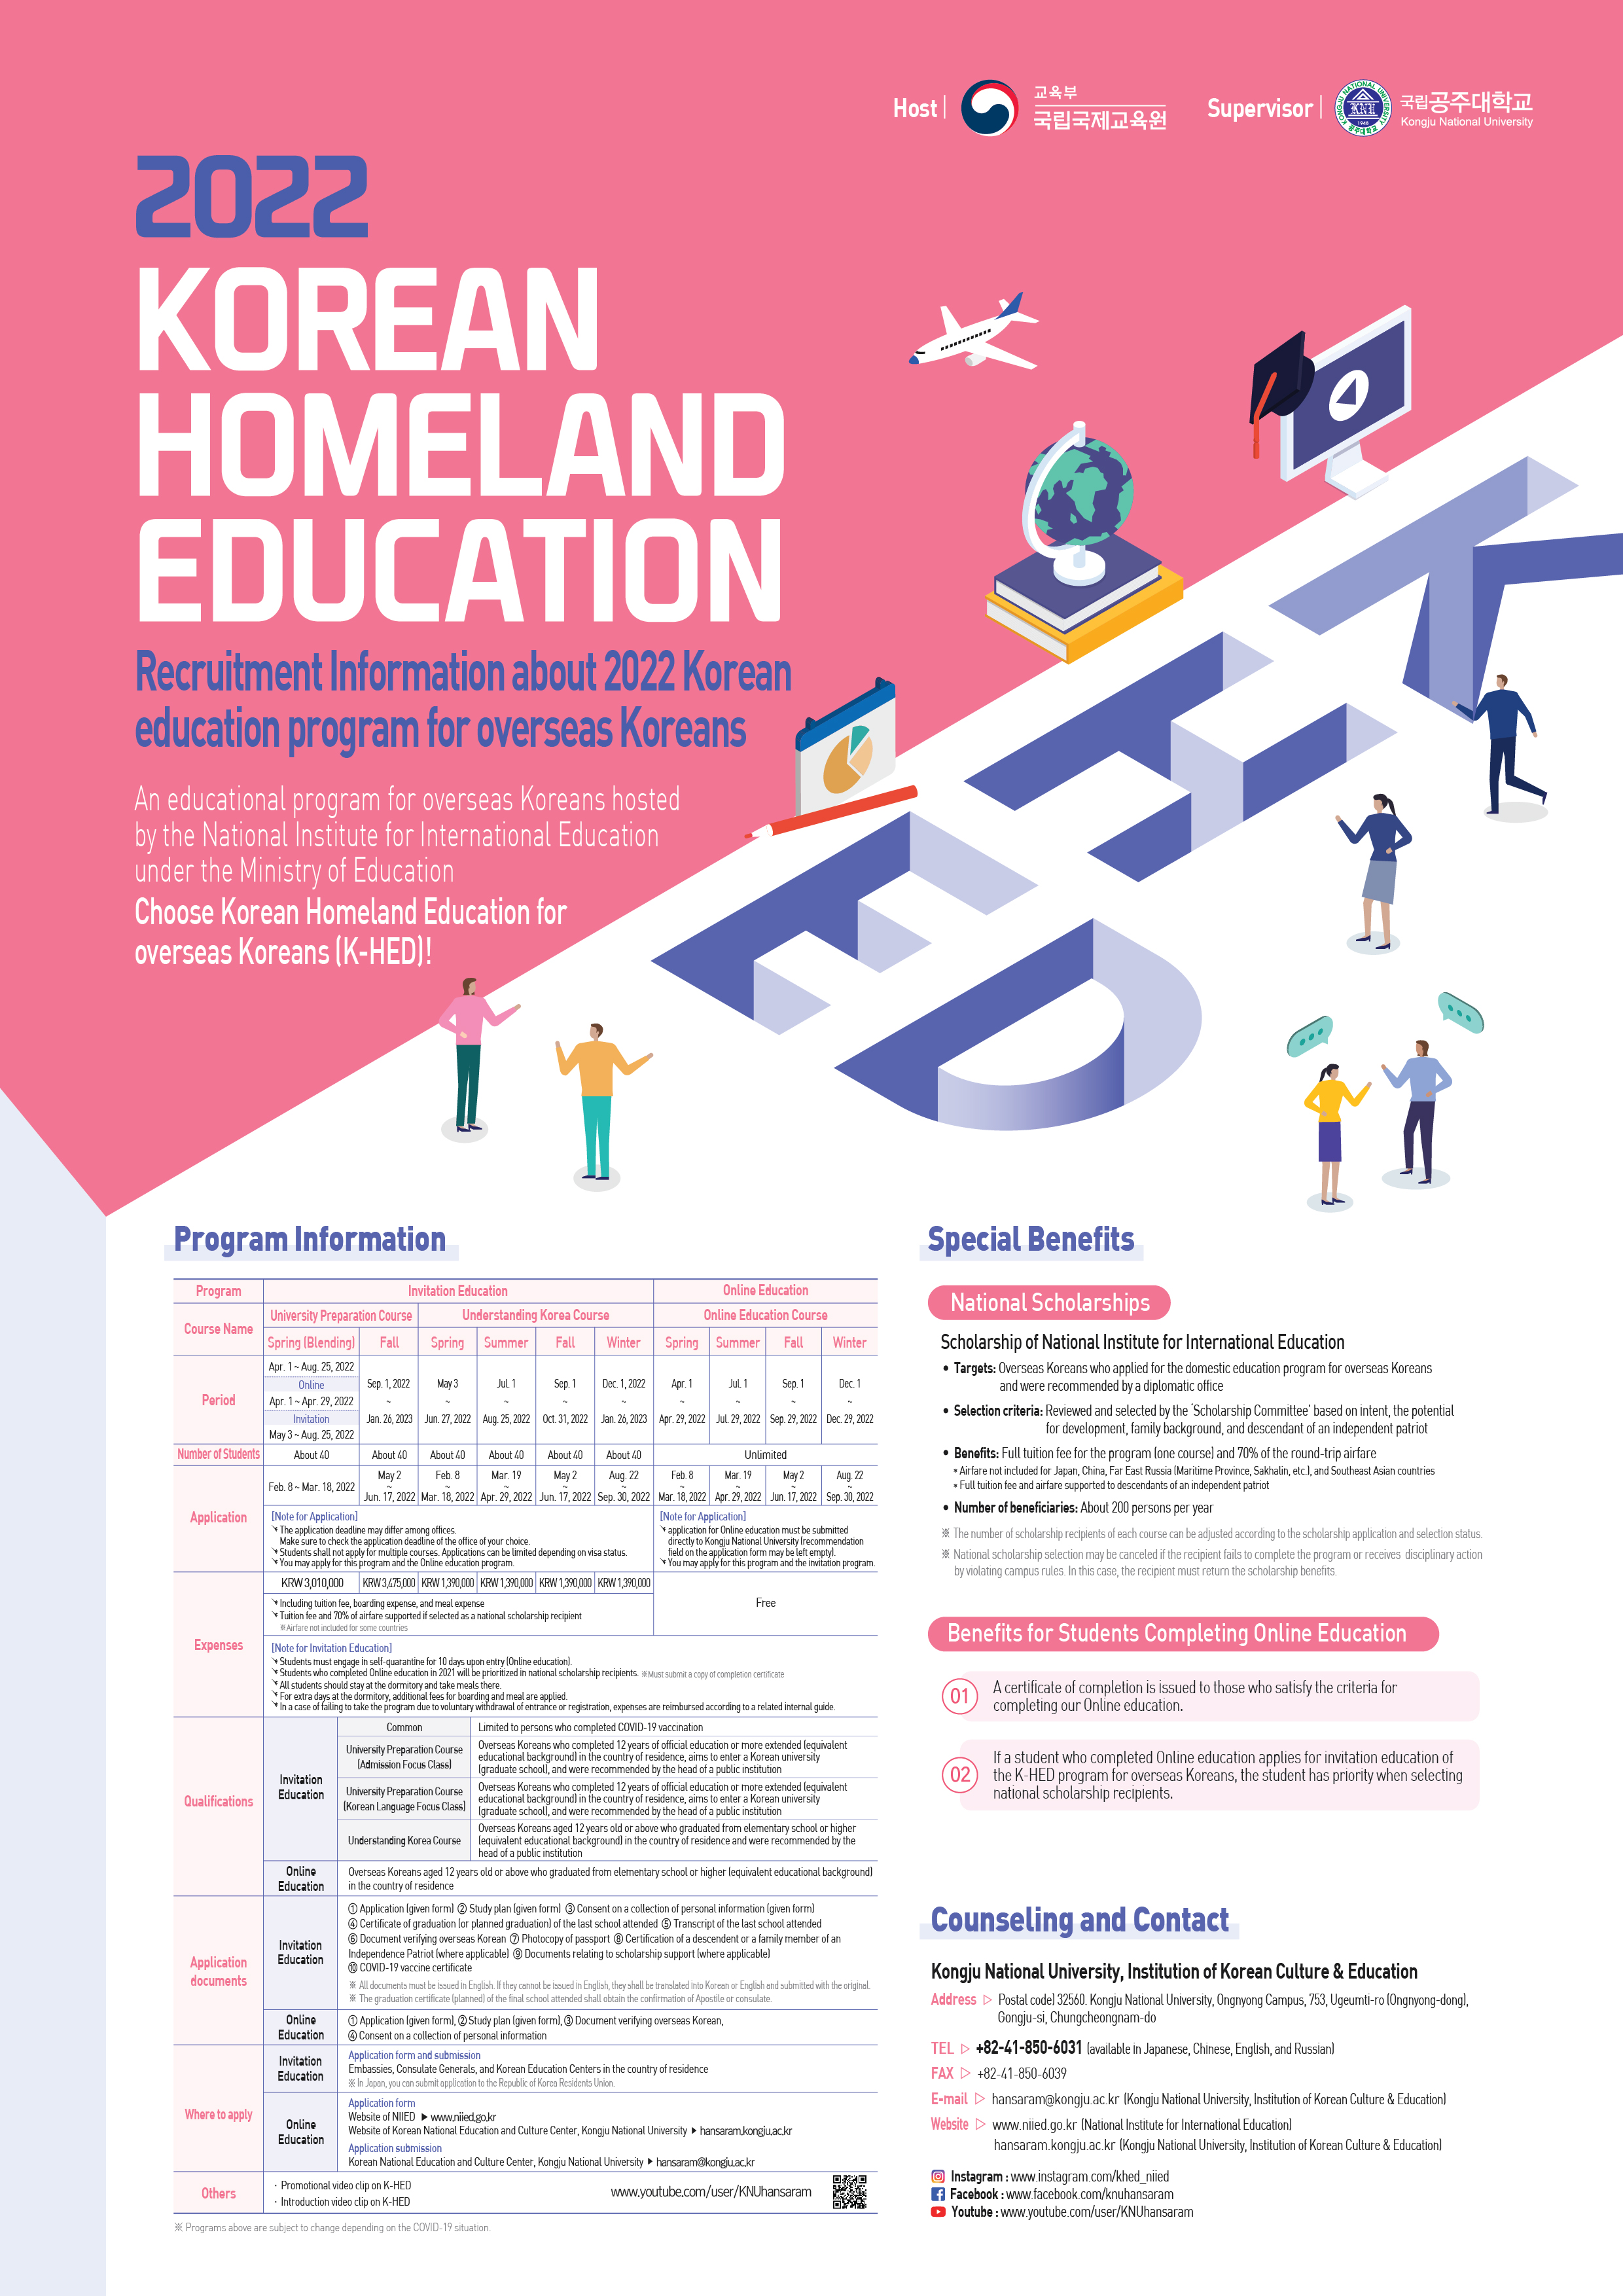 (K-HED)information about 2022 KOREAN HOMELAND EDUCATION_Eng_Poster.jpg